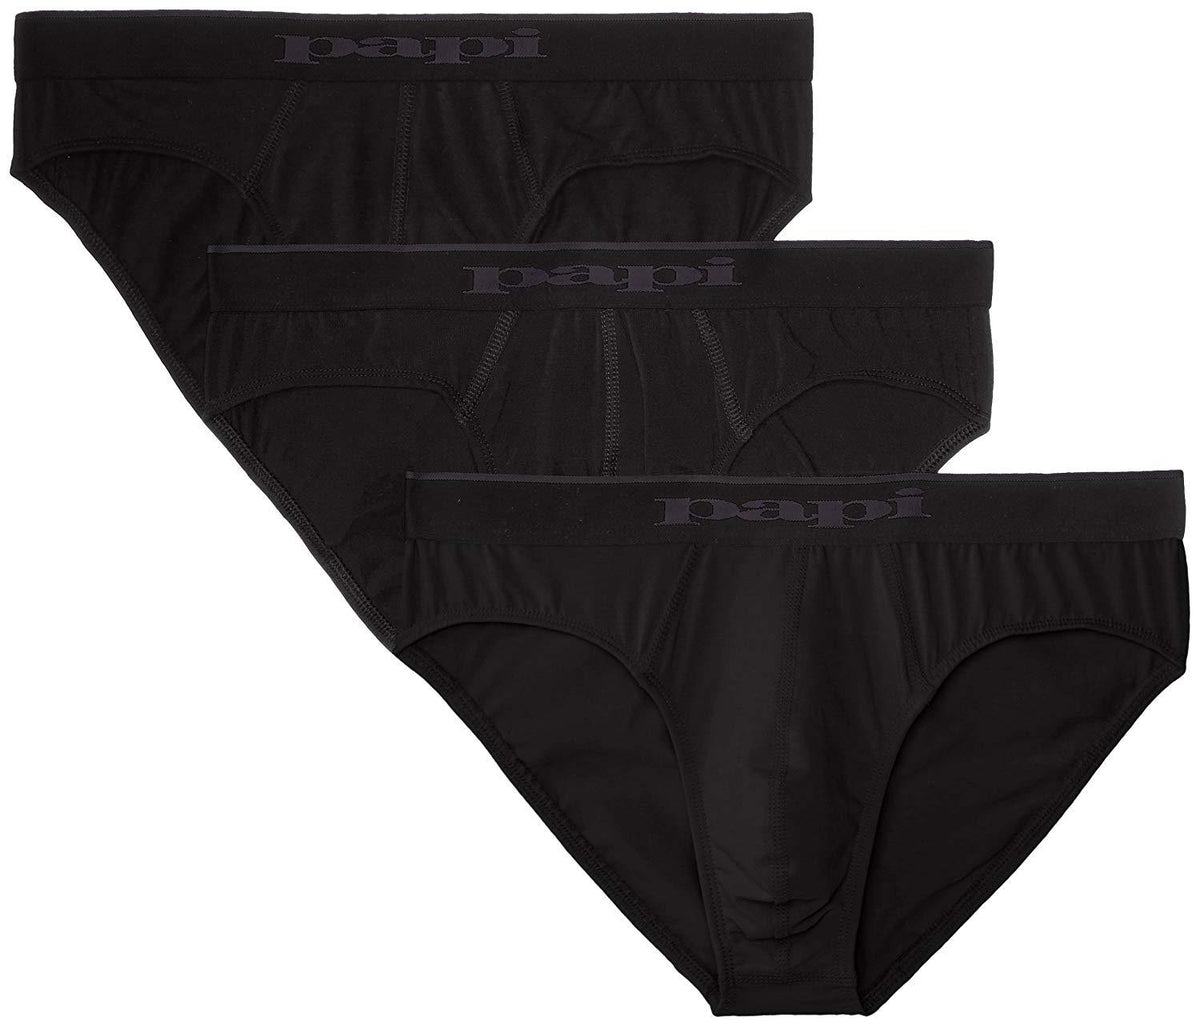 Papi Men's cotton stretch brief underwear size medium.